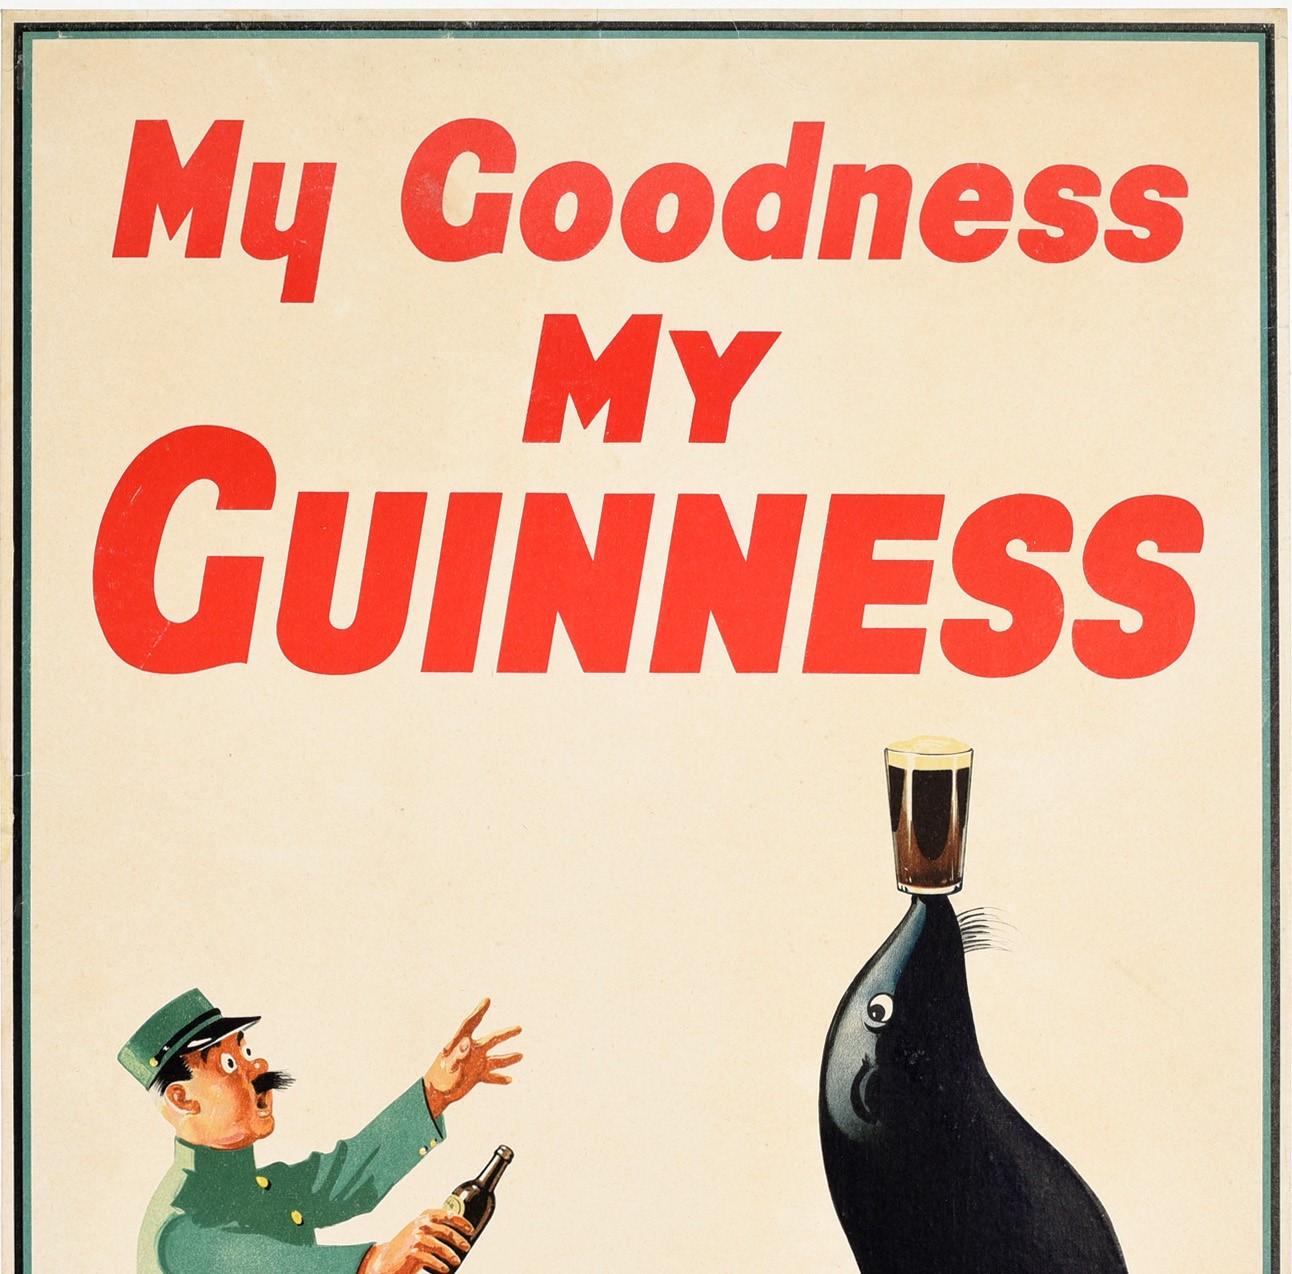 Original-Werbeplakat für das Kultgetränk Guinness Irish Stout Bier - My Goodness My Guinness - mit einem lustigen Bild eines überraschten Zoowärters in Uniform, der mit seiner Guinness-Flasche zu einem Seelöwen rennt, der sein Glas Bier auf der Nase